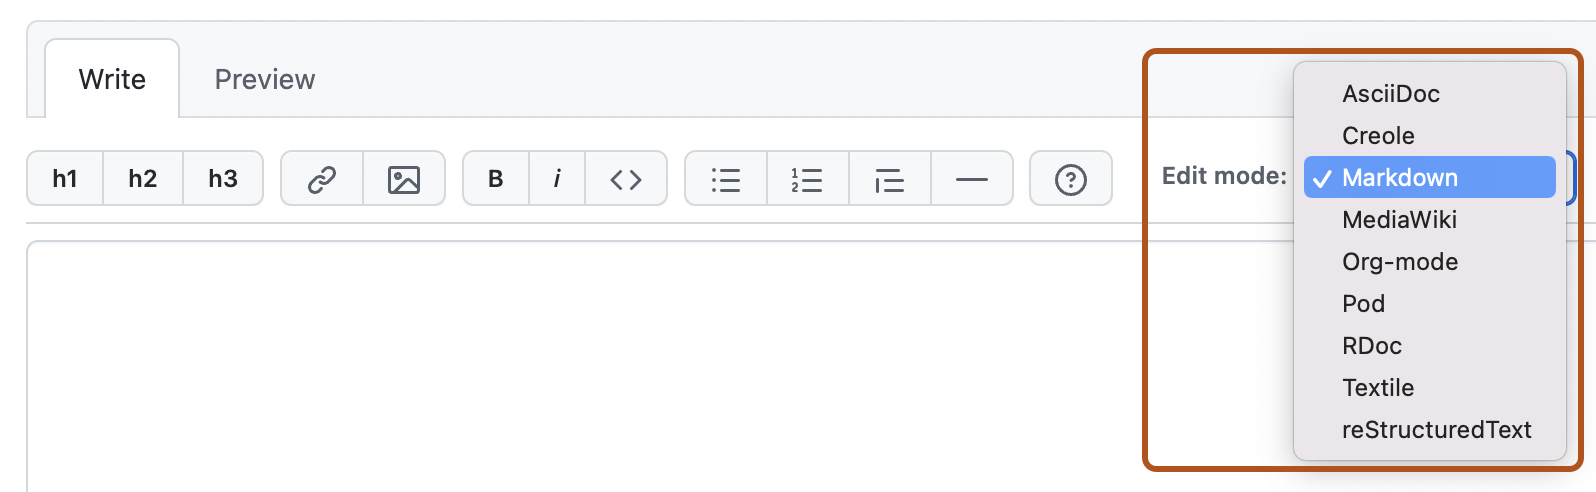 Capture d’écran de la page « Créer une page ». La liste déroulante « Mode d’édition » est signalée en orange foncé.